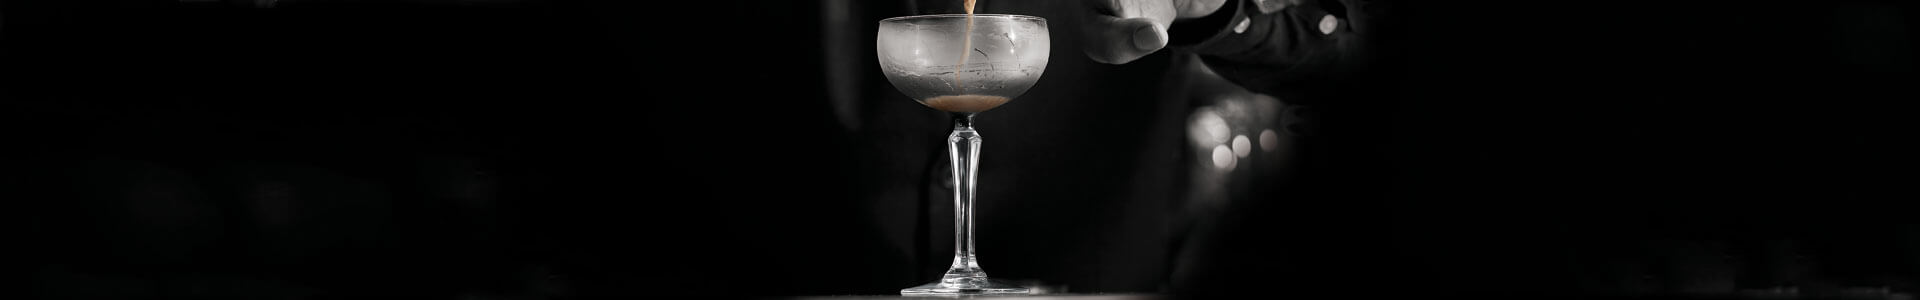 Cocktailschale von Libbey aus der Serie S P K S Y, gesprochen speakeasy.